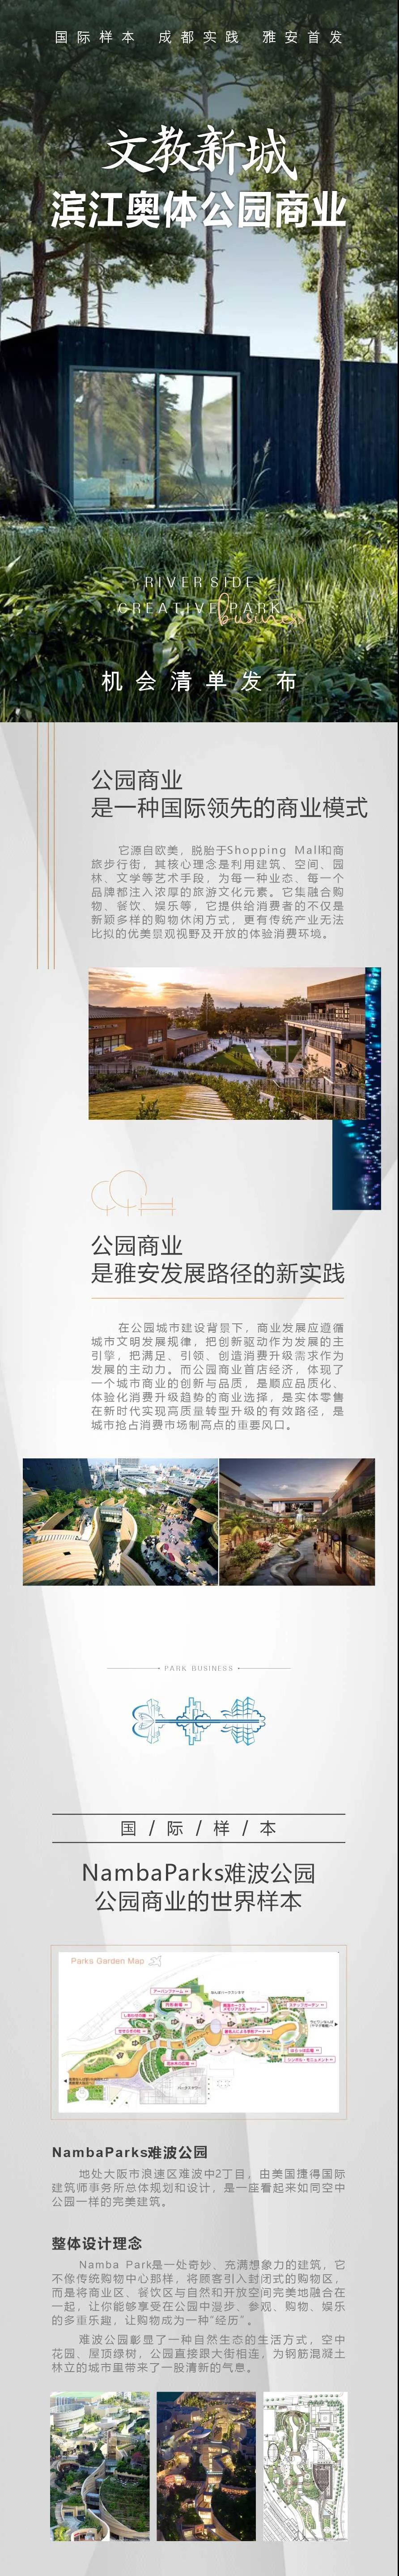 雅安文教新城发布首份公园商业机会清单